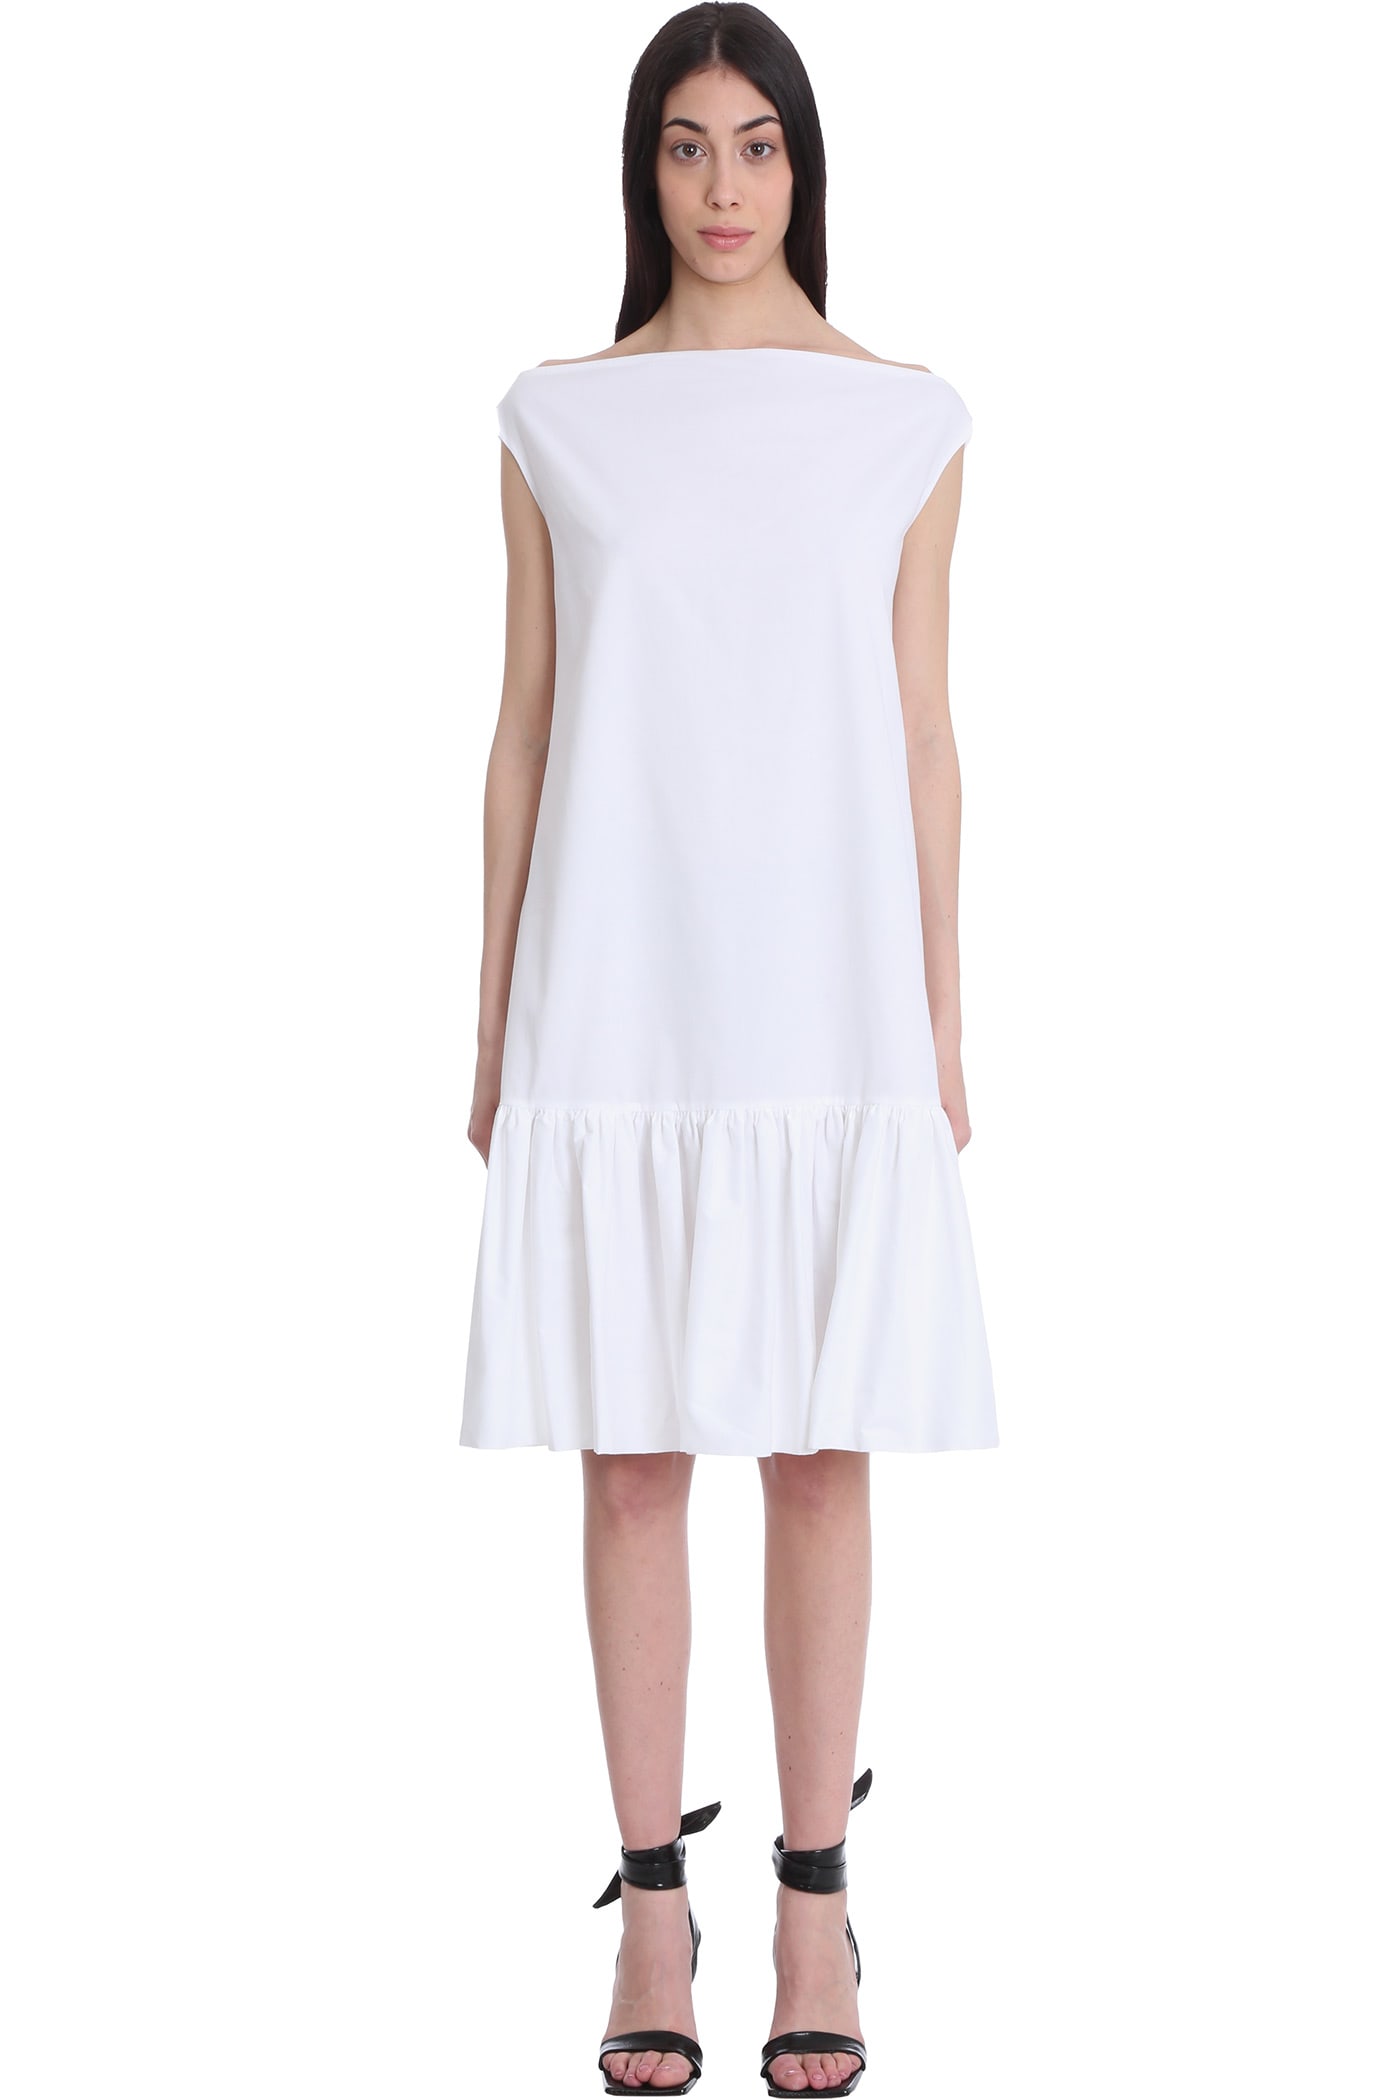 LAutre Chose Dress In White Cotton